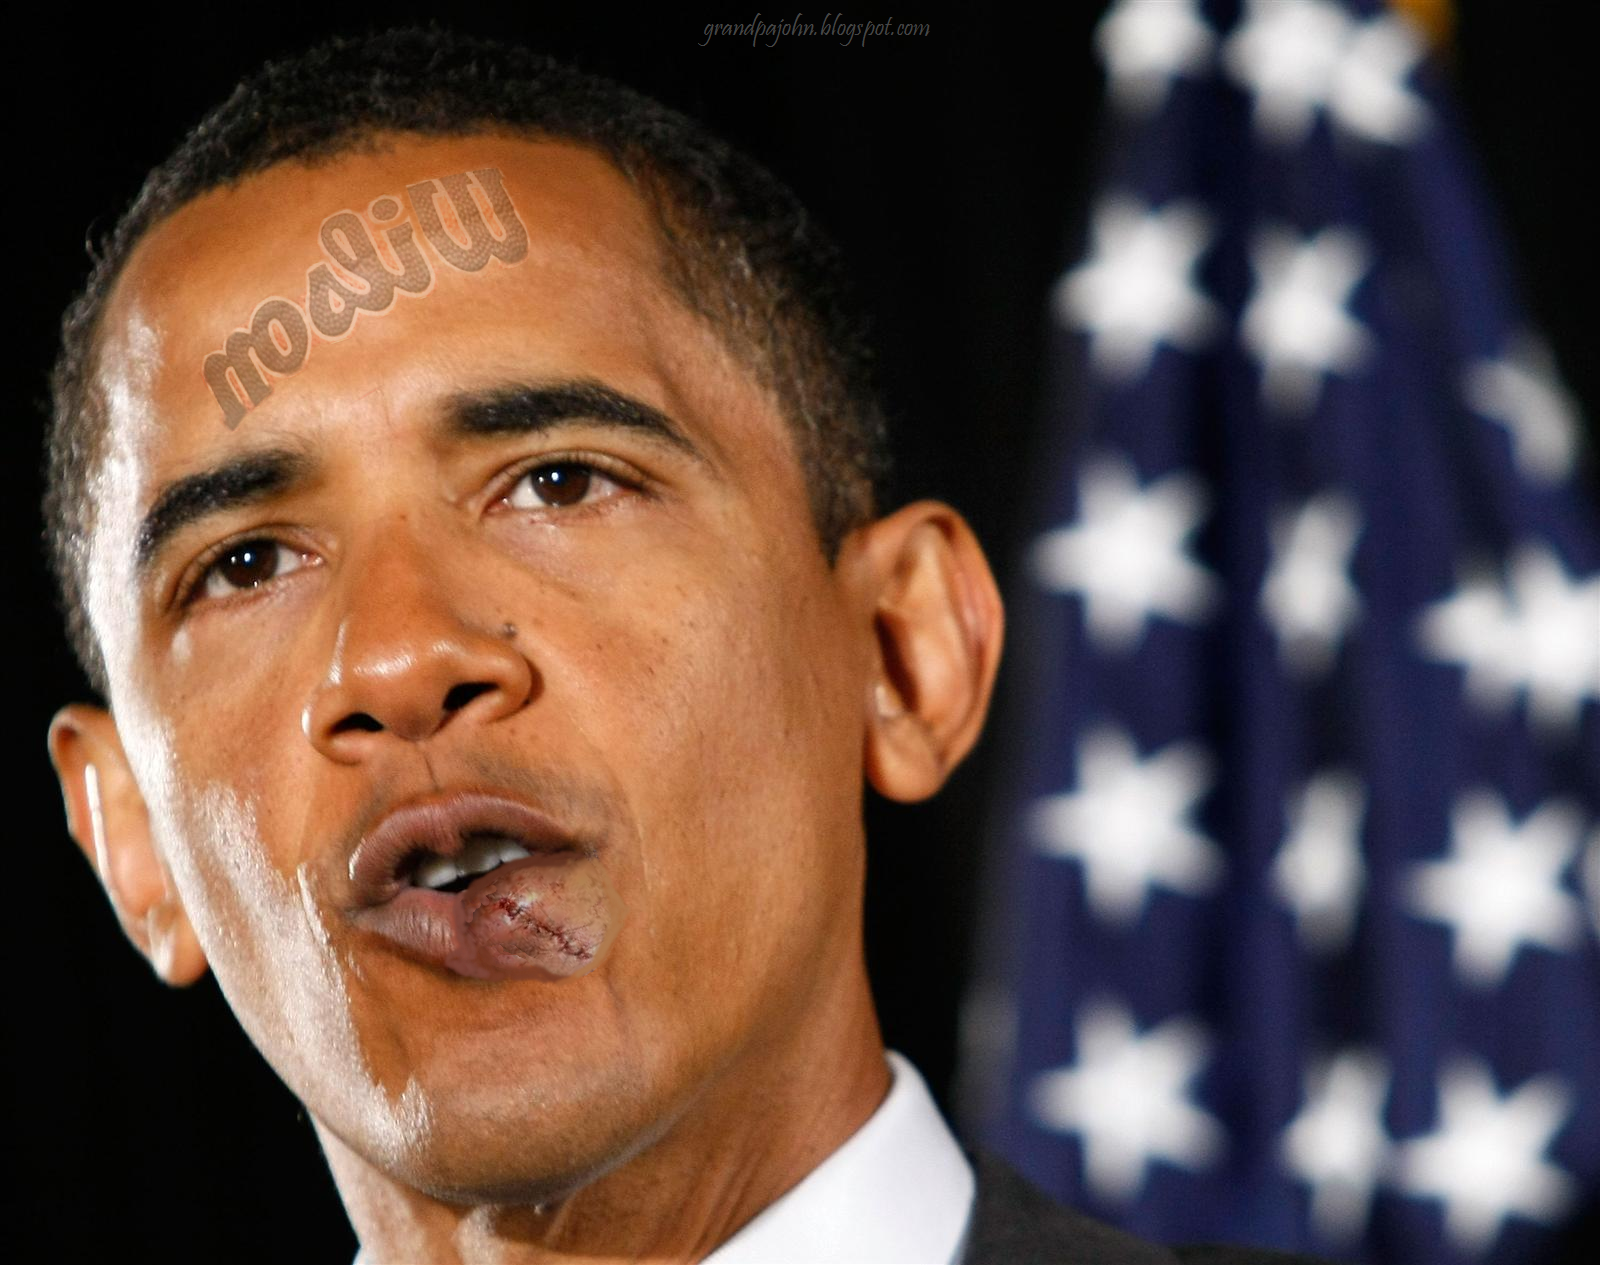 http://1.bp.blogspot.com/_sK6O7q1TURQ/TPBgxjrLeMI/AAAAAAAAEJU/_W_DZUASU84/s1600/Obama%2527s+Stitches.png